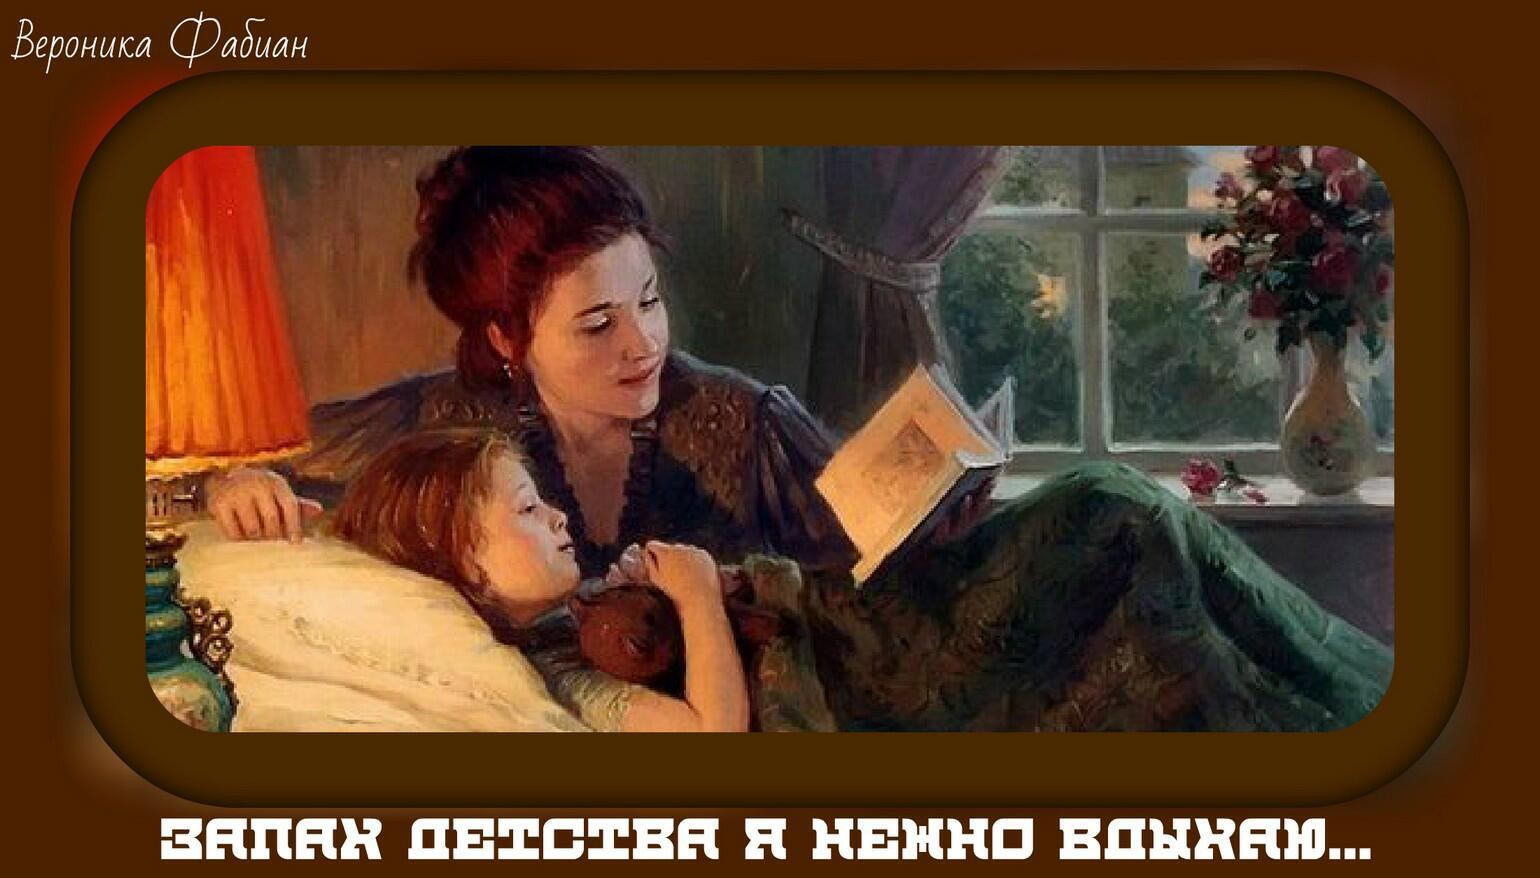 Мама друга читать рассказ. Мама рассказывает сказку. Чтение в живописи. Мама читает сказку. Читающие дети в живописи.